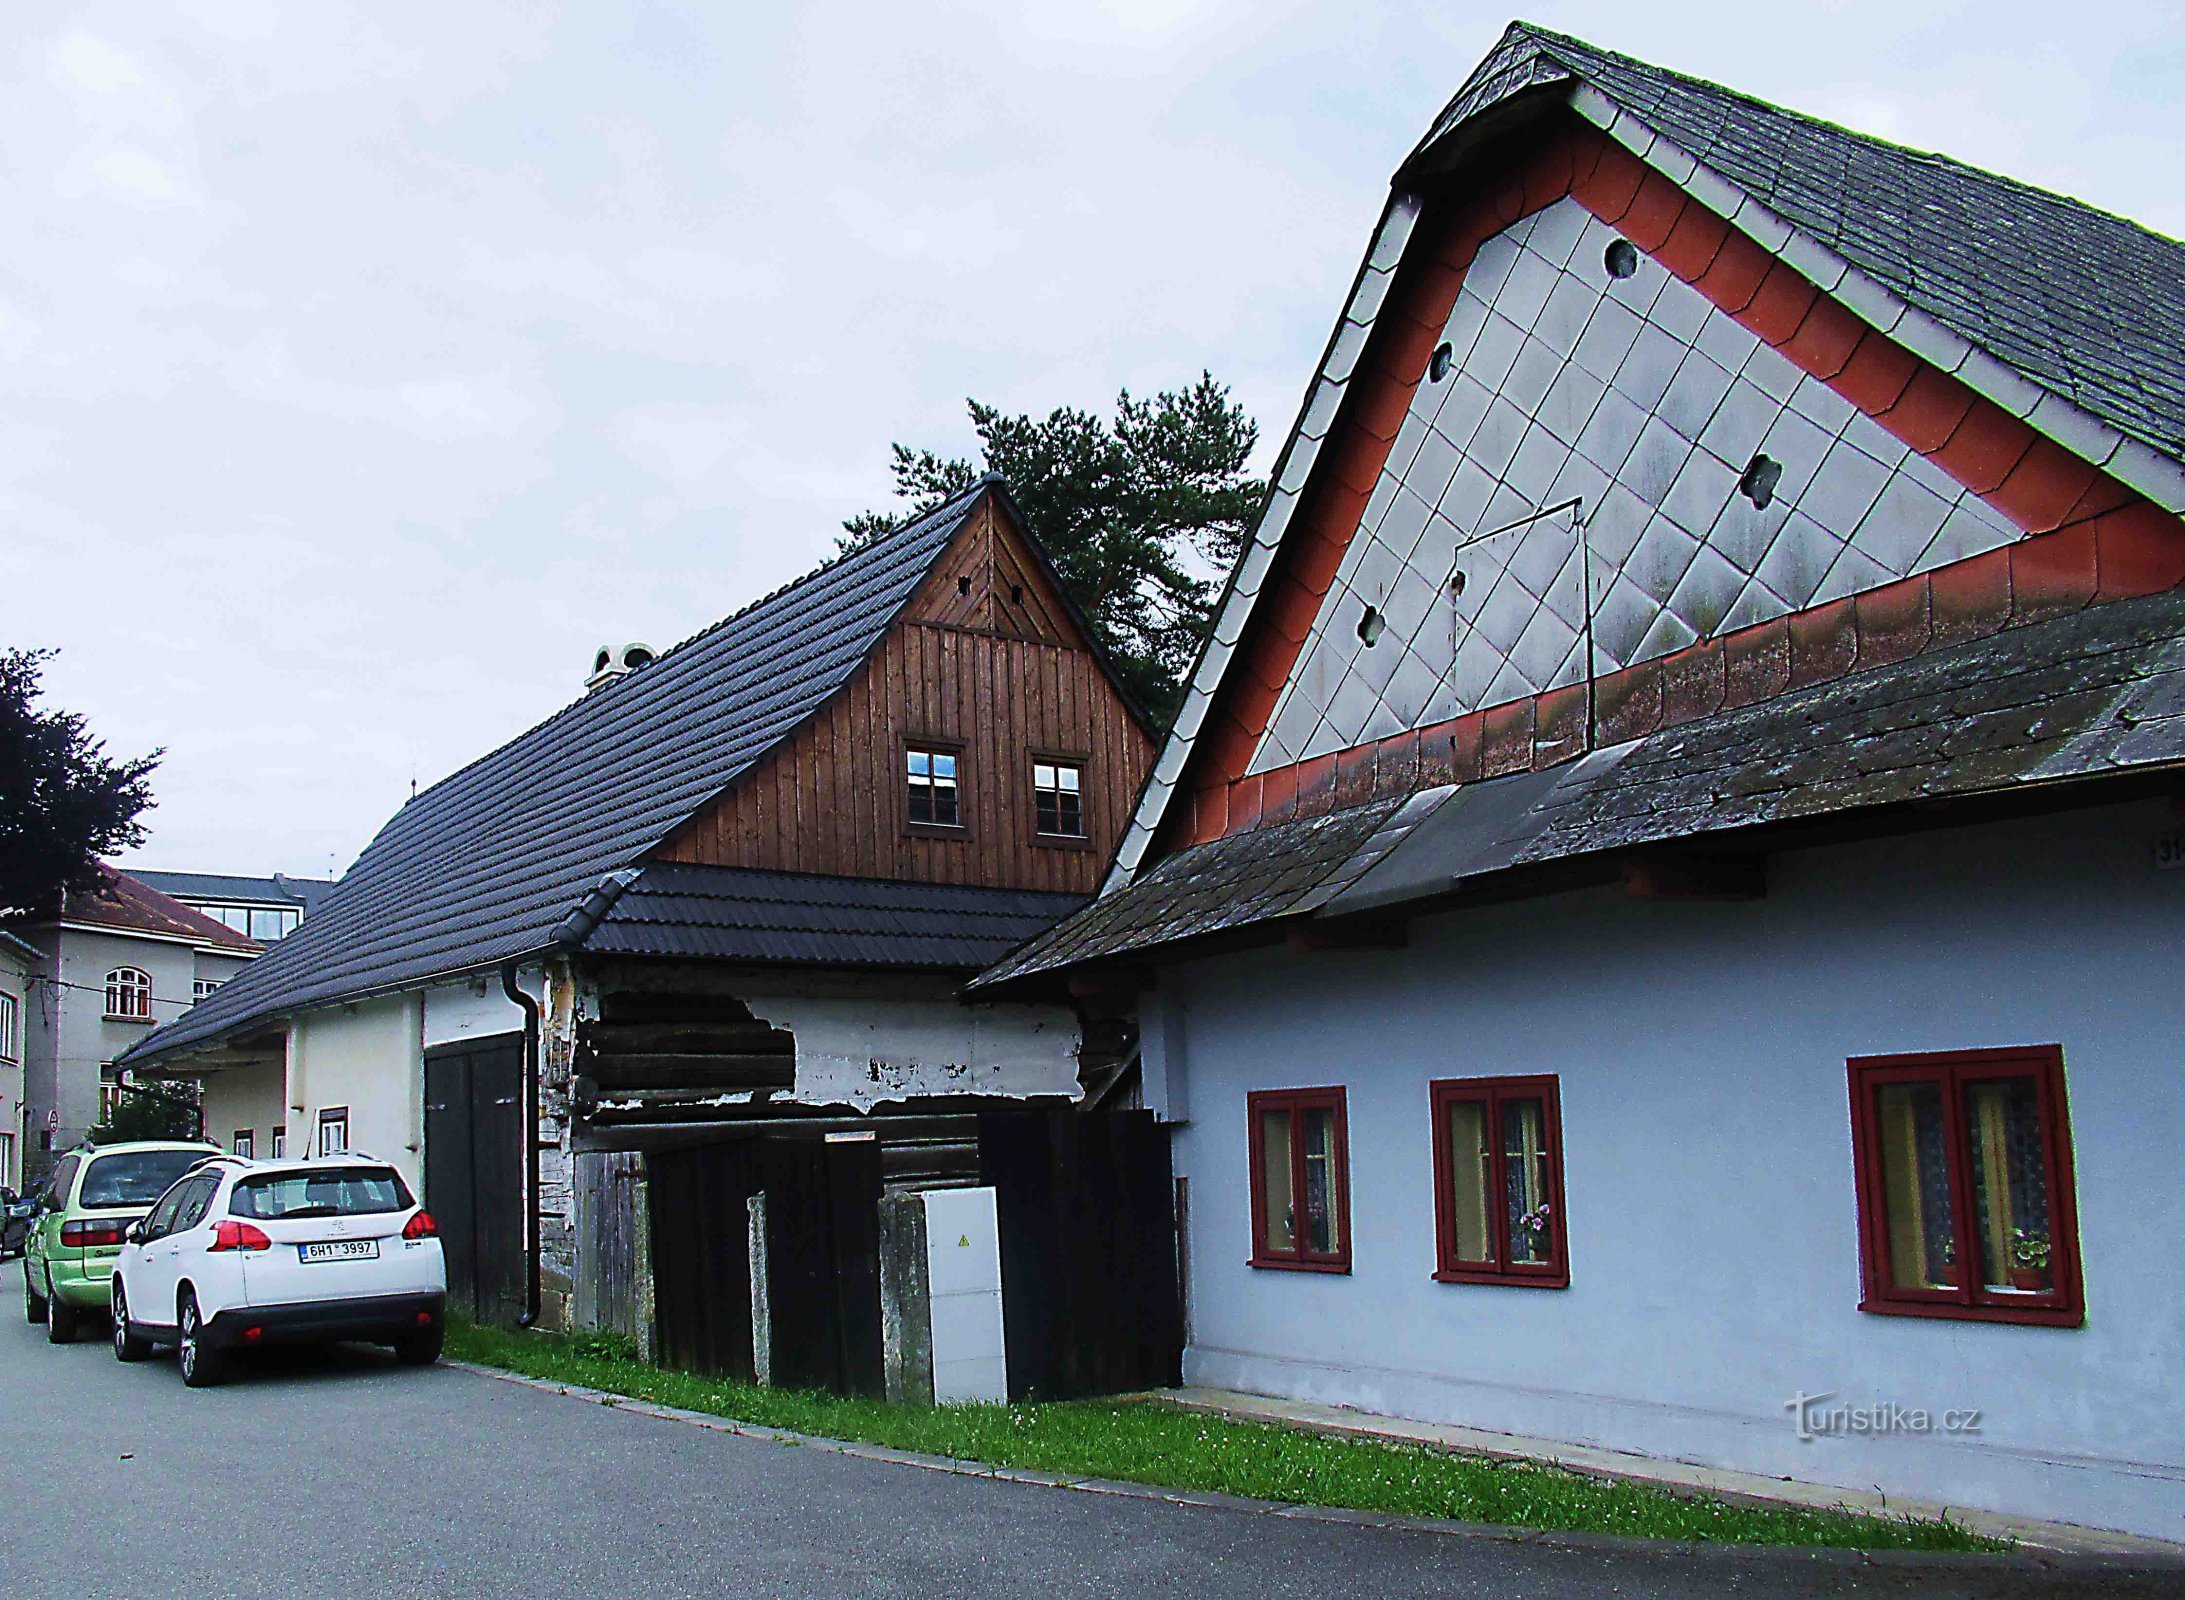 Дома ткачей - народные постройки 19 века в Усти-над-Орлицей.